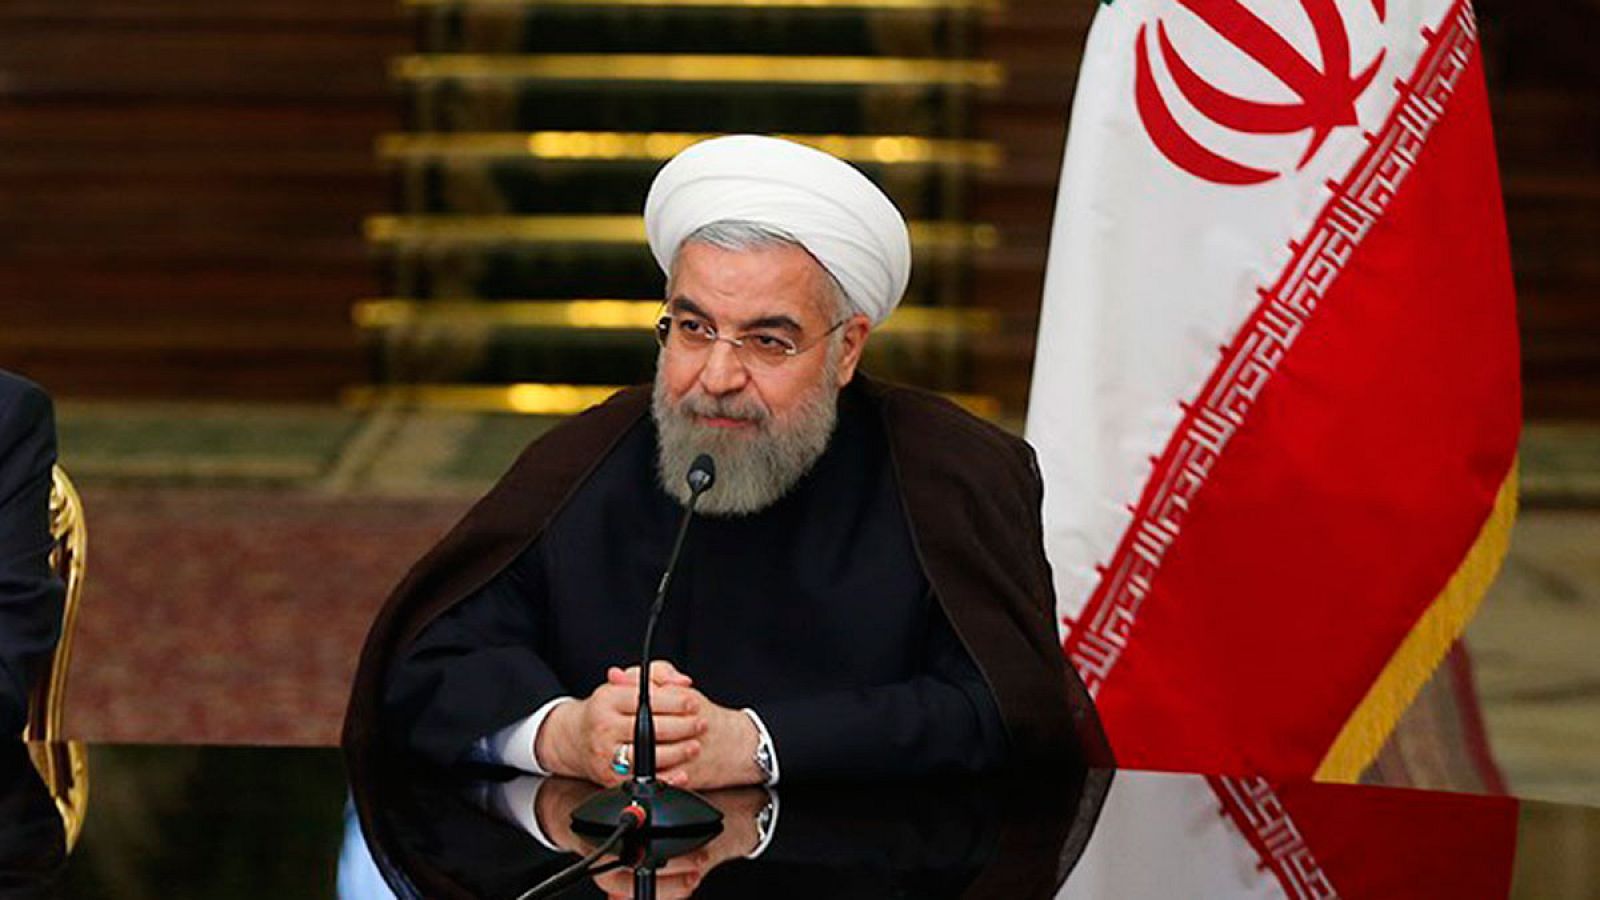 El presidente de Irán, Hasan Rohani, en una imagen el pasado 8 de septiembre.